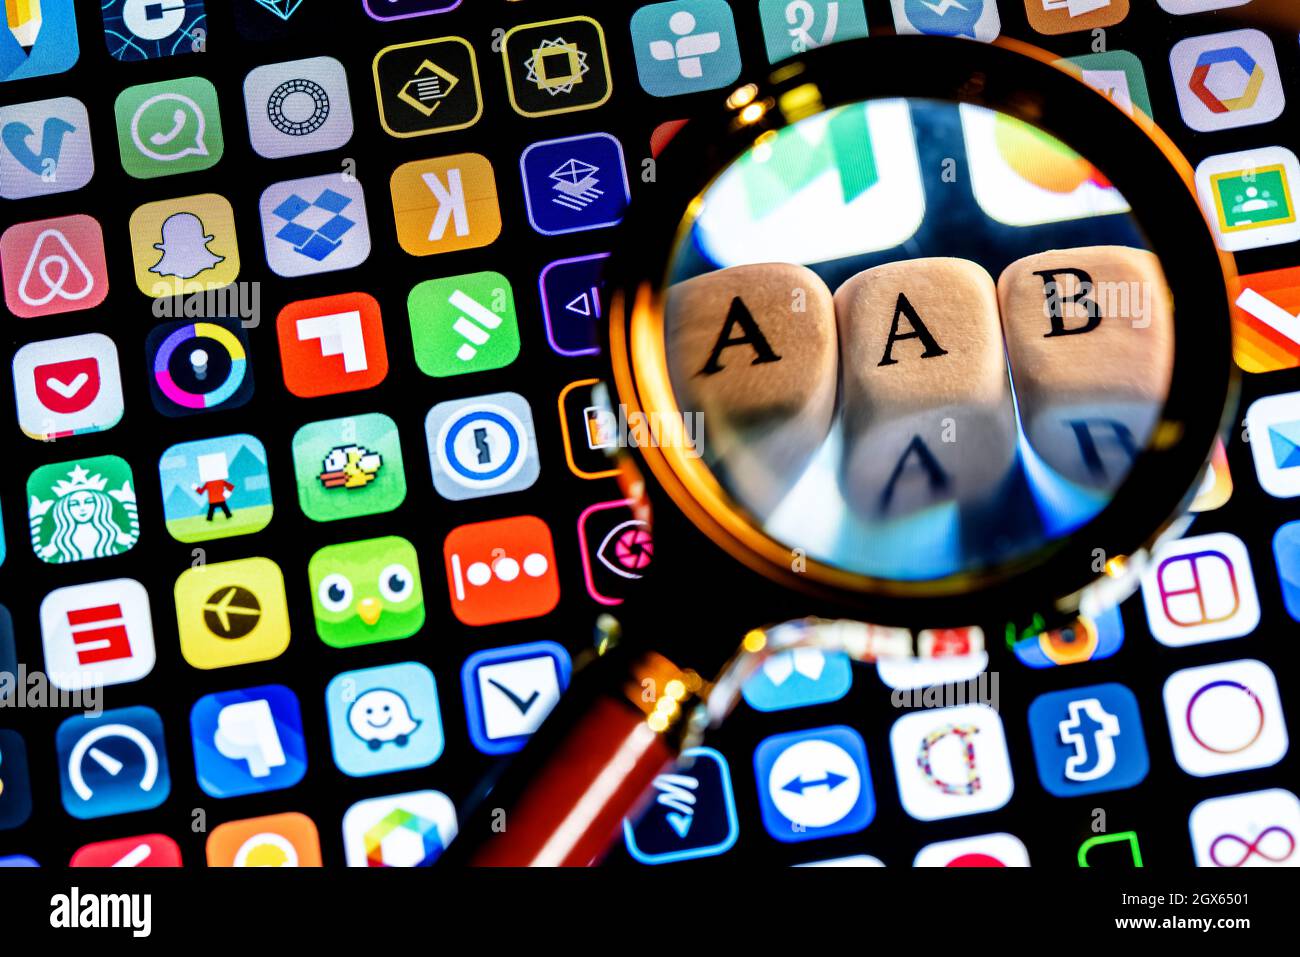 Abkürzung AAB (Android App Bundle) besteht aus Würfeln mit Buchstaben unter einer Lupe. Stockfoto